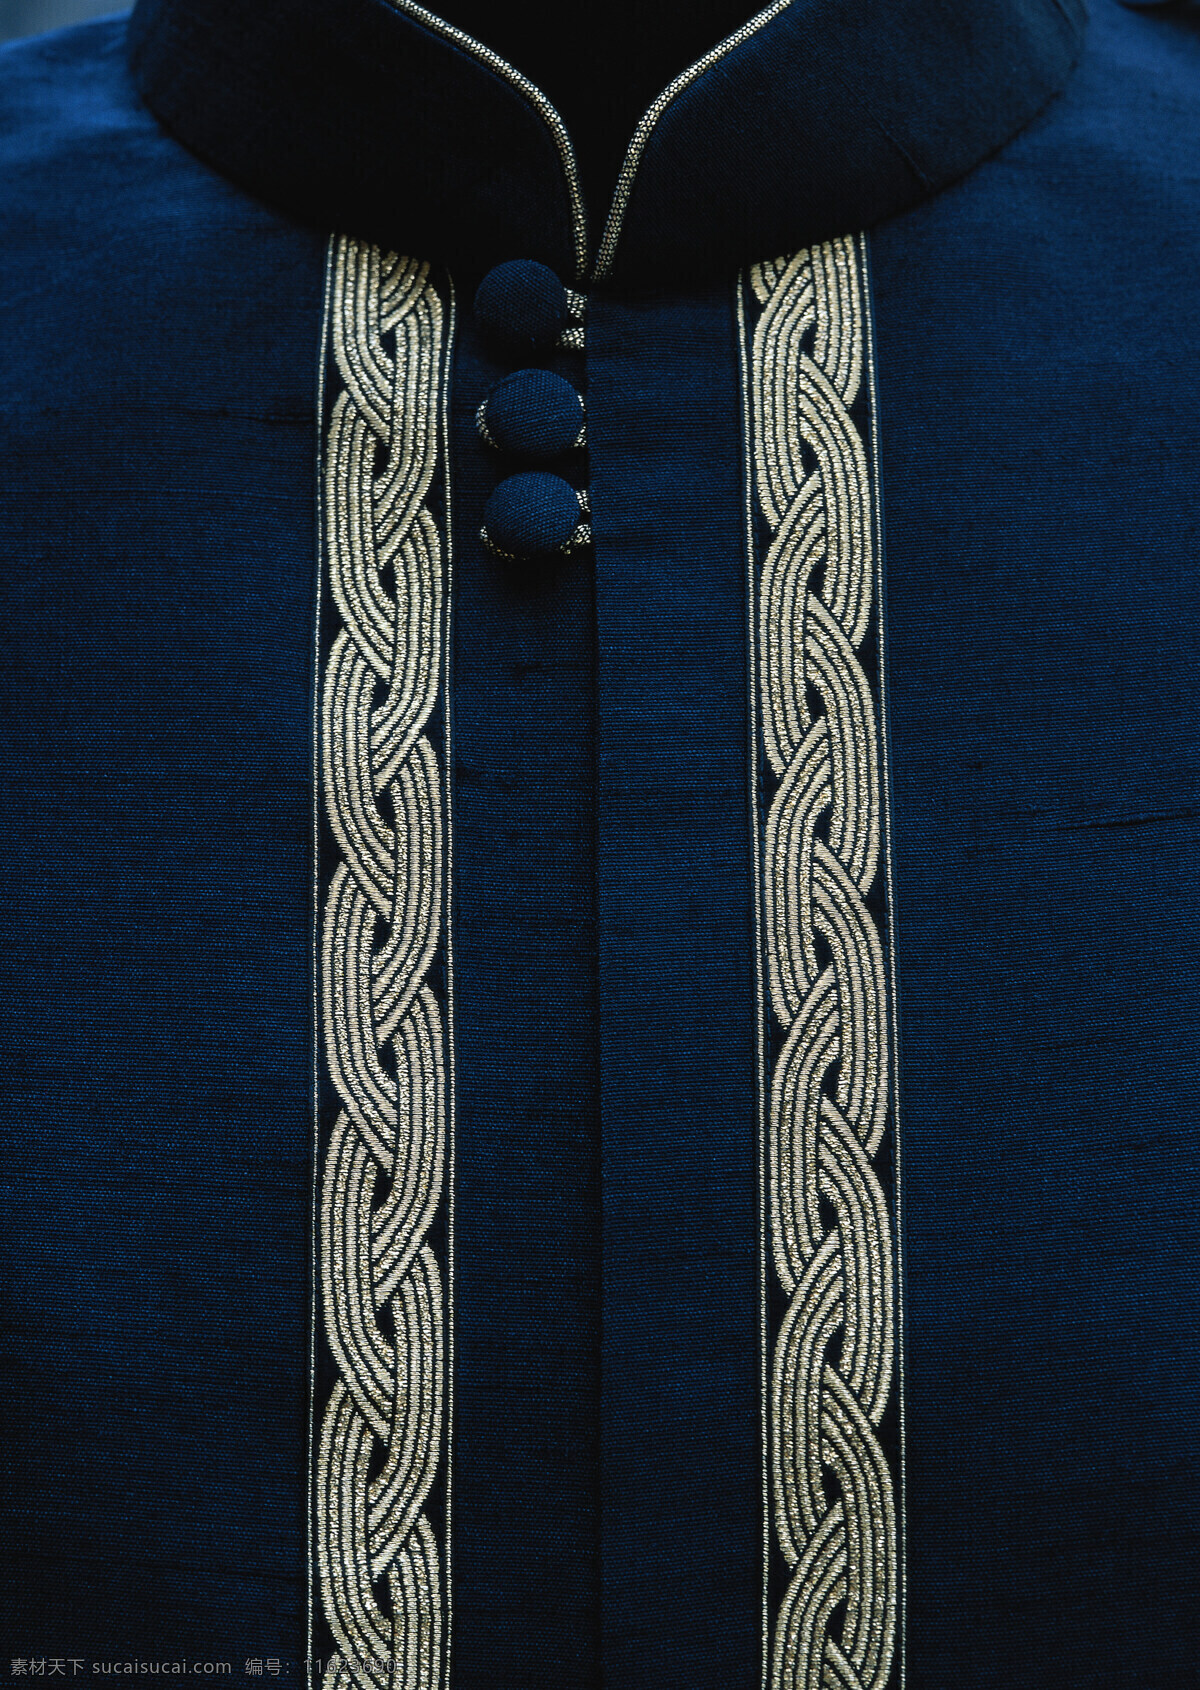 唐装 布料 丝绸 针织 刺绣 古典 典雅 中国风 文化 高清 旗袍 人文素材 文化艺术 传统文化